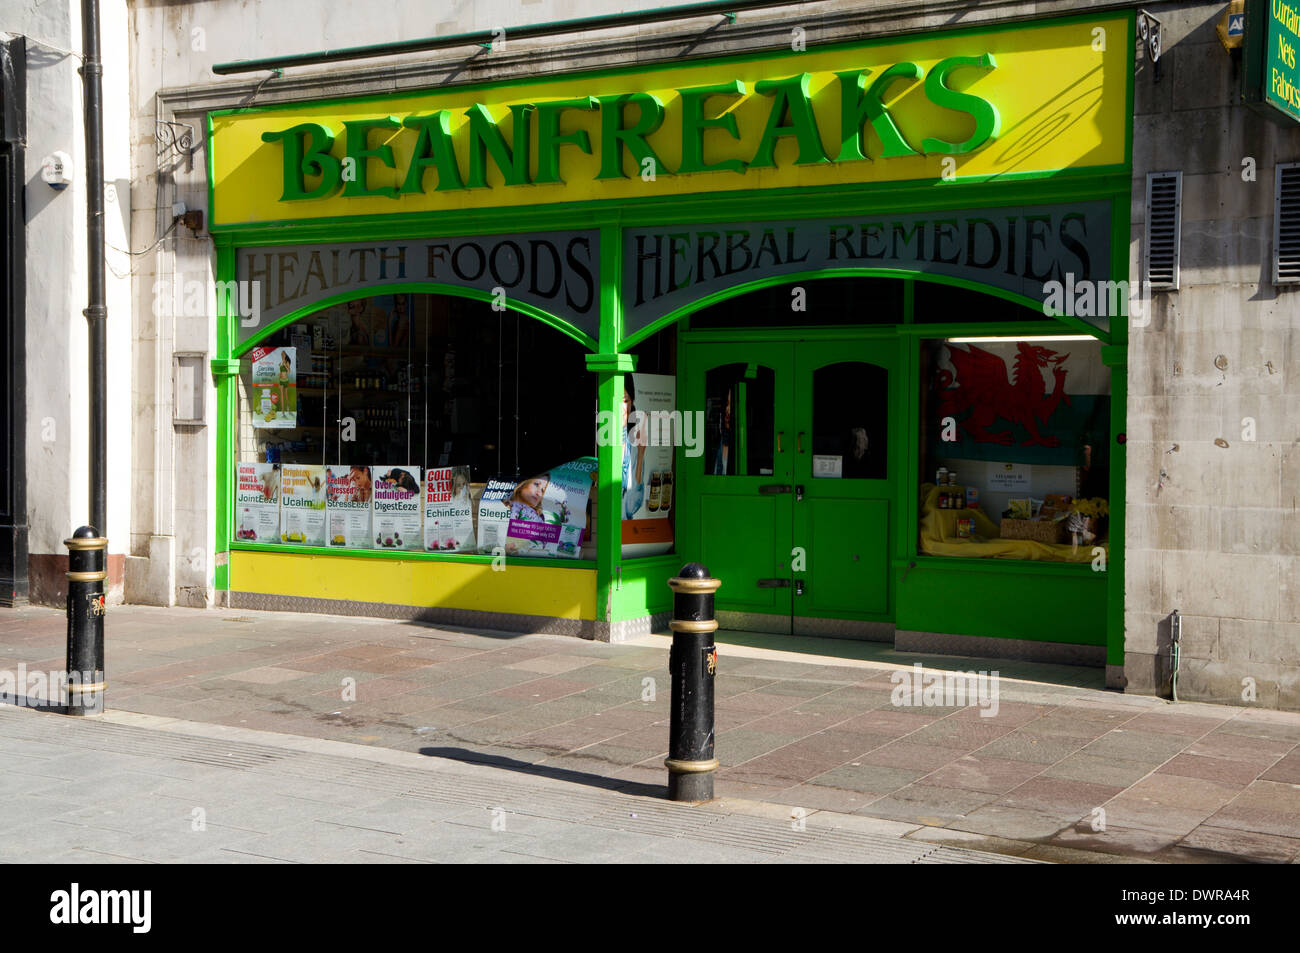 Tienda de comida de salud Beanfreaks, High Street, Cardiff, Gales. Foto de stock